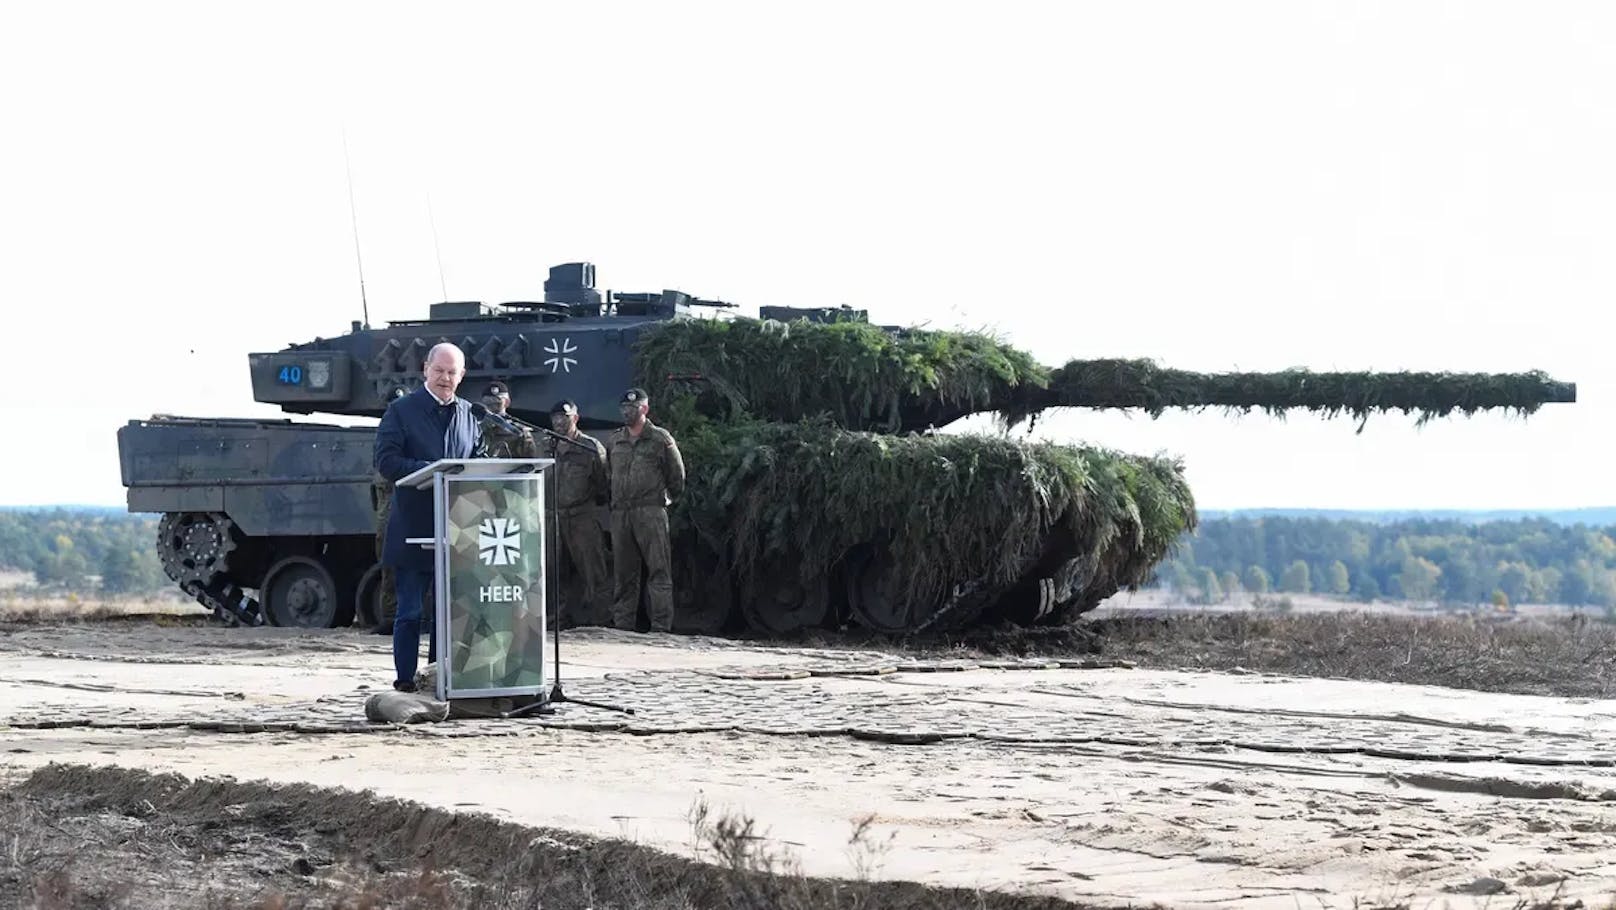 Kanzler Olaf Scholz vor dem Kampfpanzer Leopard 2: Es darf "keine Alleingänge" geben. Allerdings wollen etwa Polen und Finnland der Ukraine solche Kampfpanzer schicken.